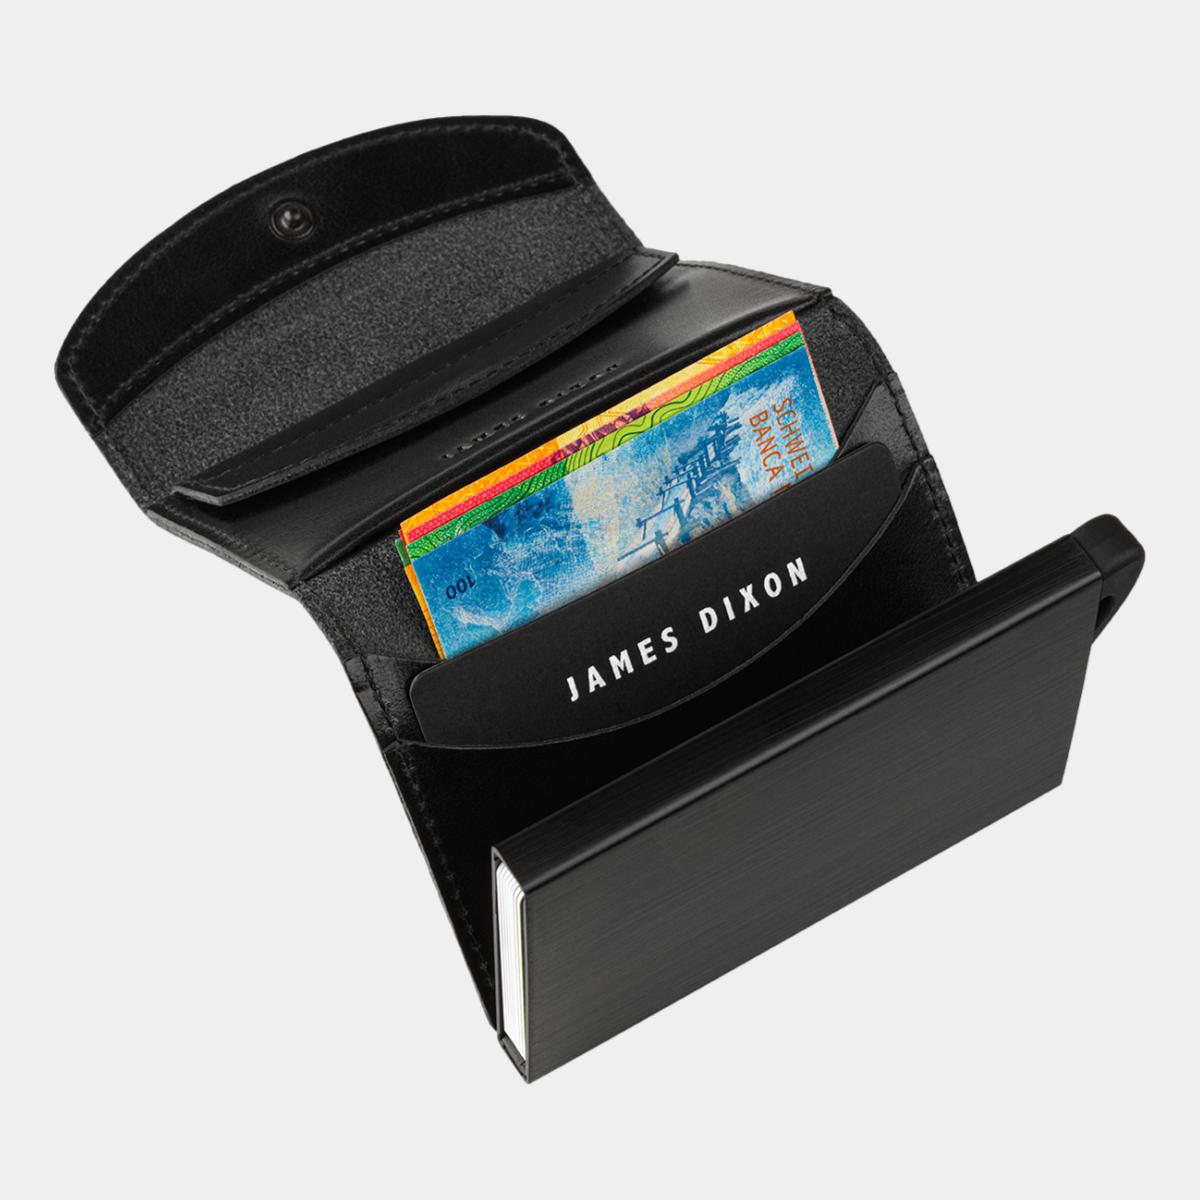 jd0101 james dixon grande classic all black coin pocket wallet notes